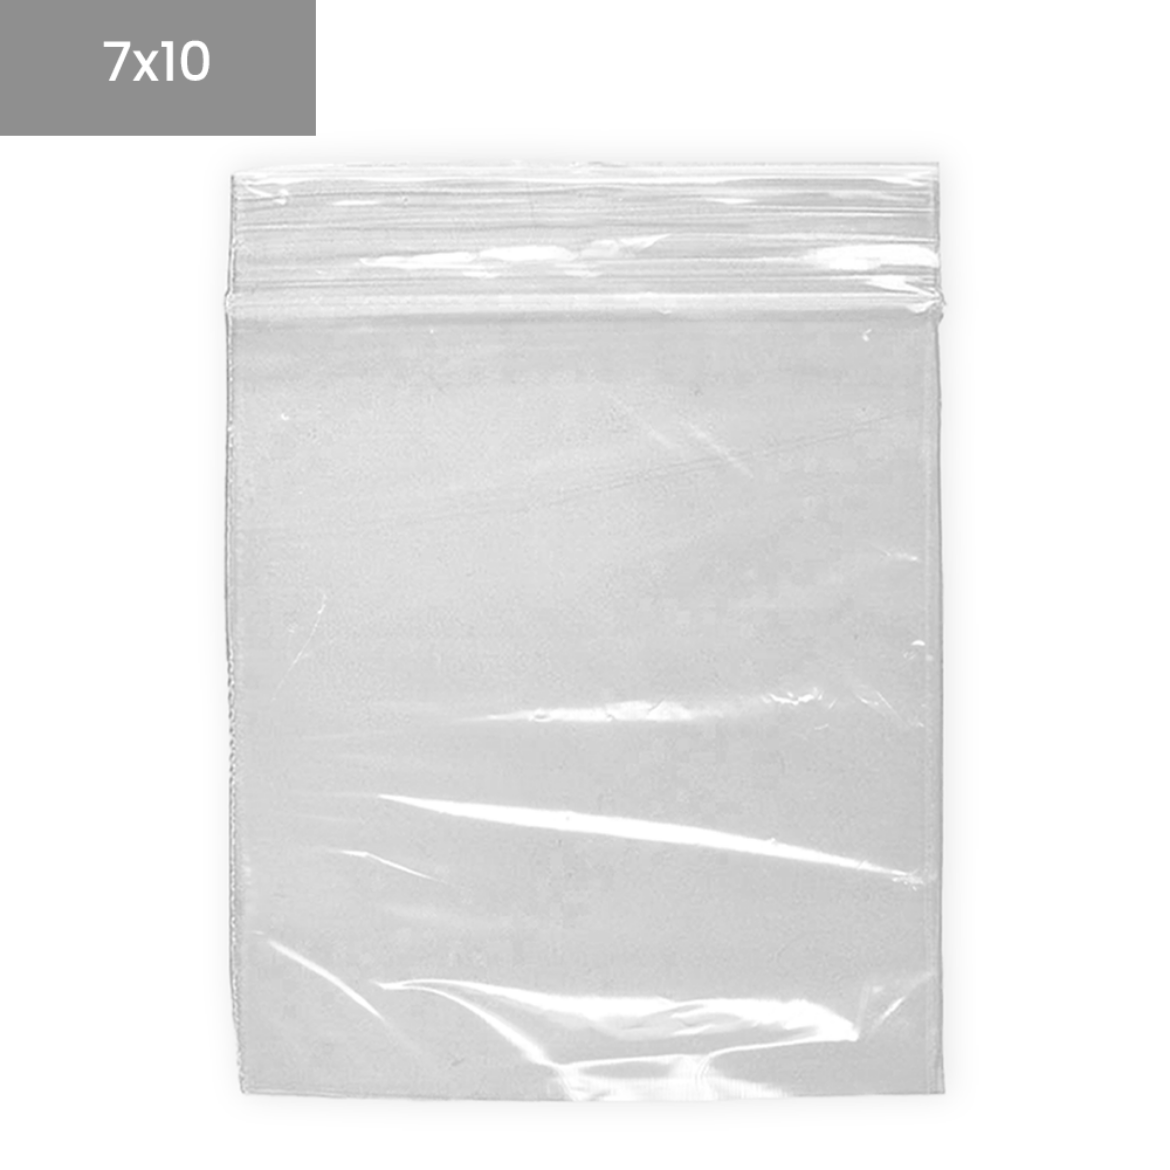 Bolsas de plástico transparentes ZIP 7x10